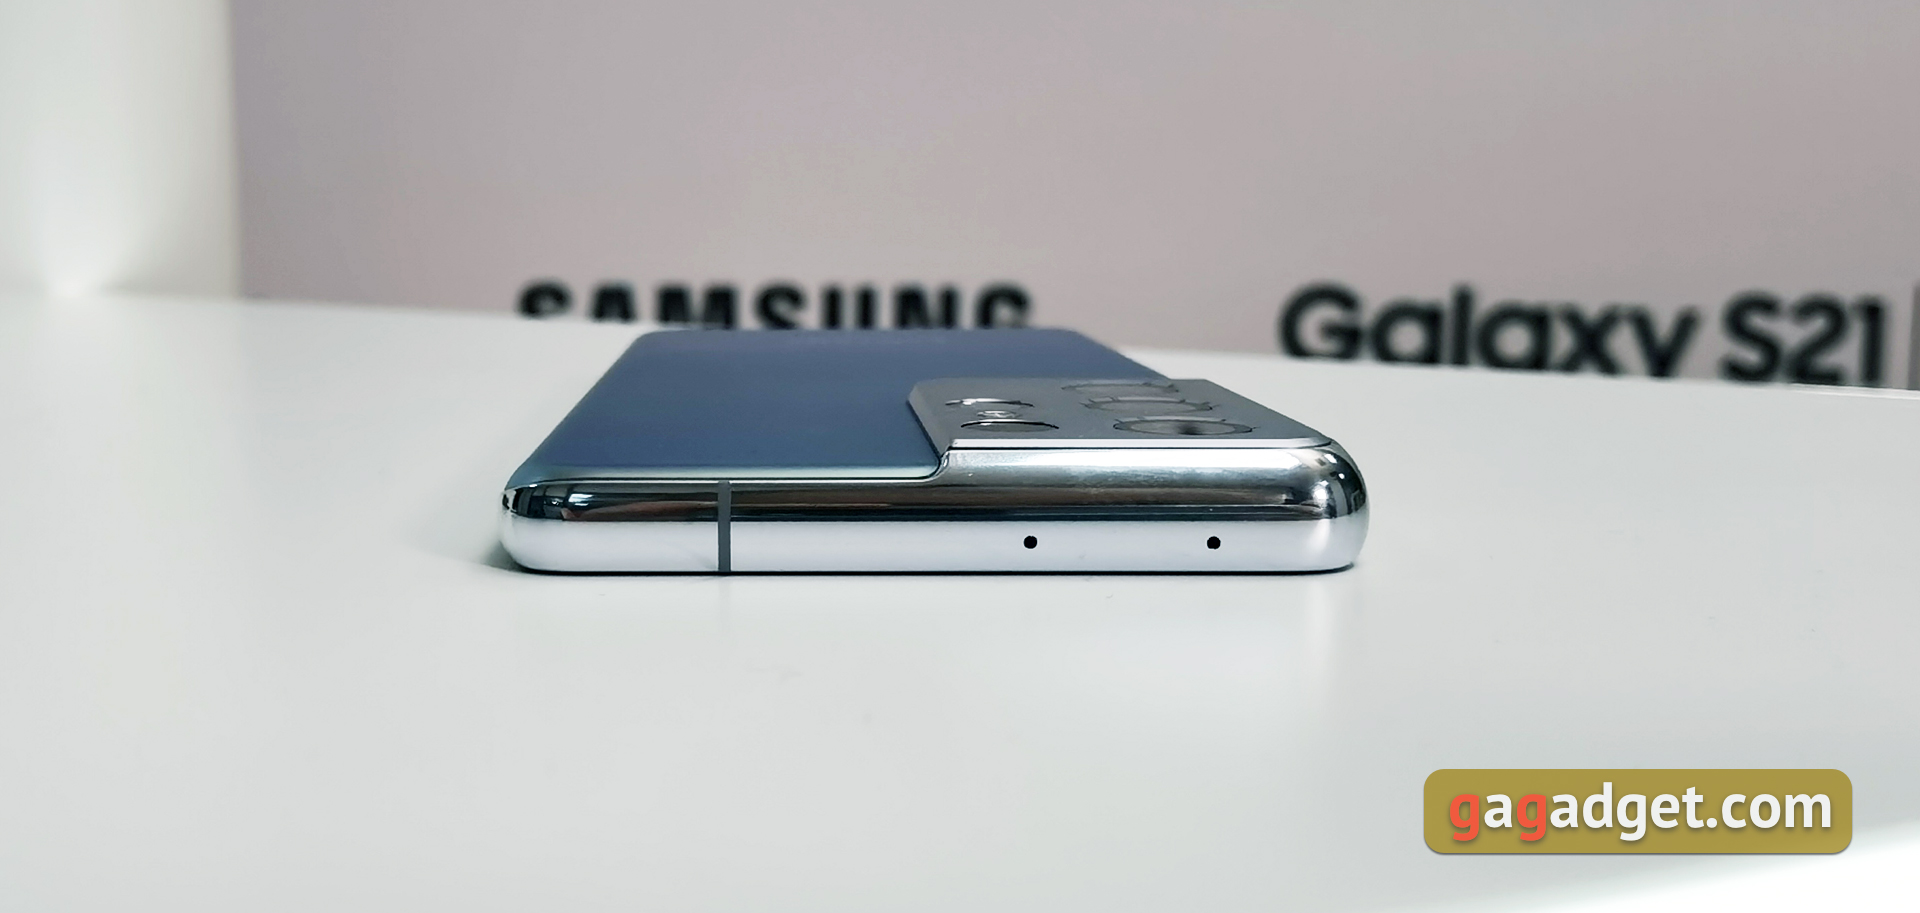 Флагманская линейка Samsung Galaxy S21 и наушники Galaxy Buds Pro своими глазами-14